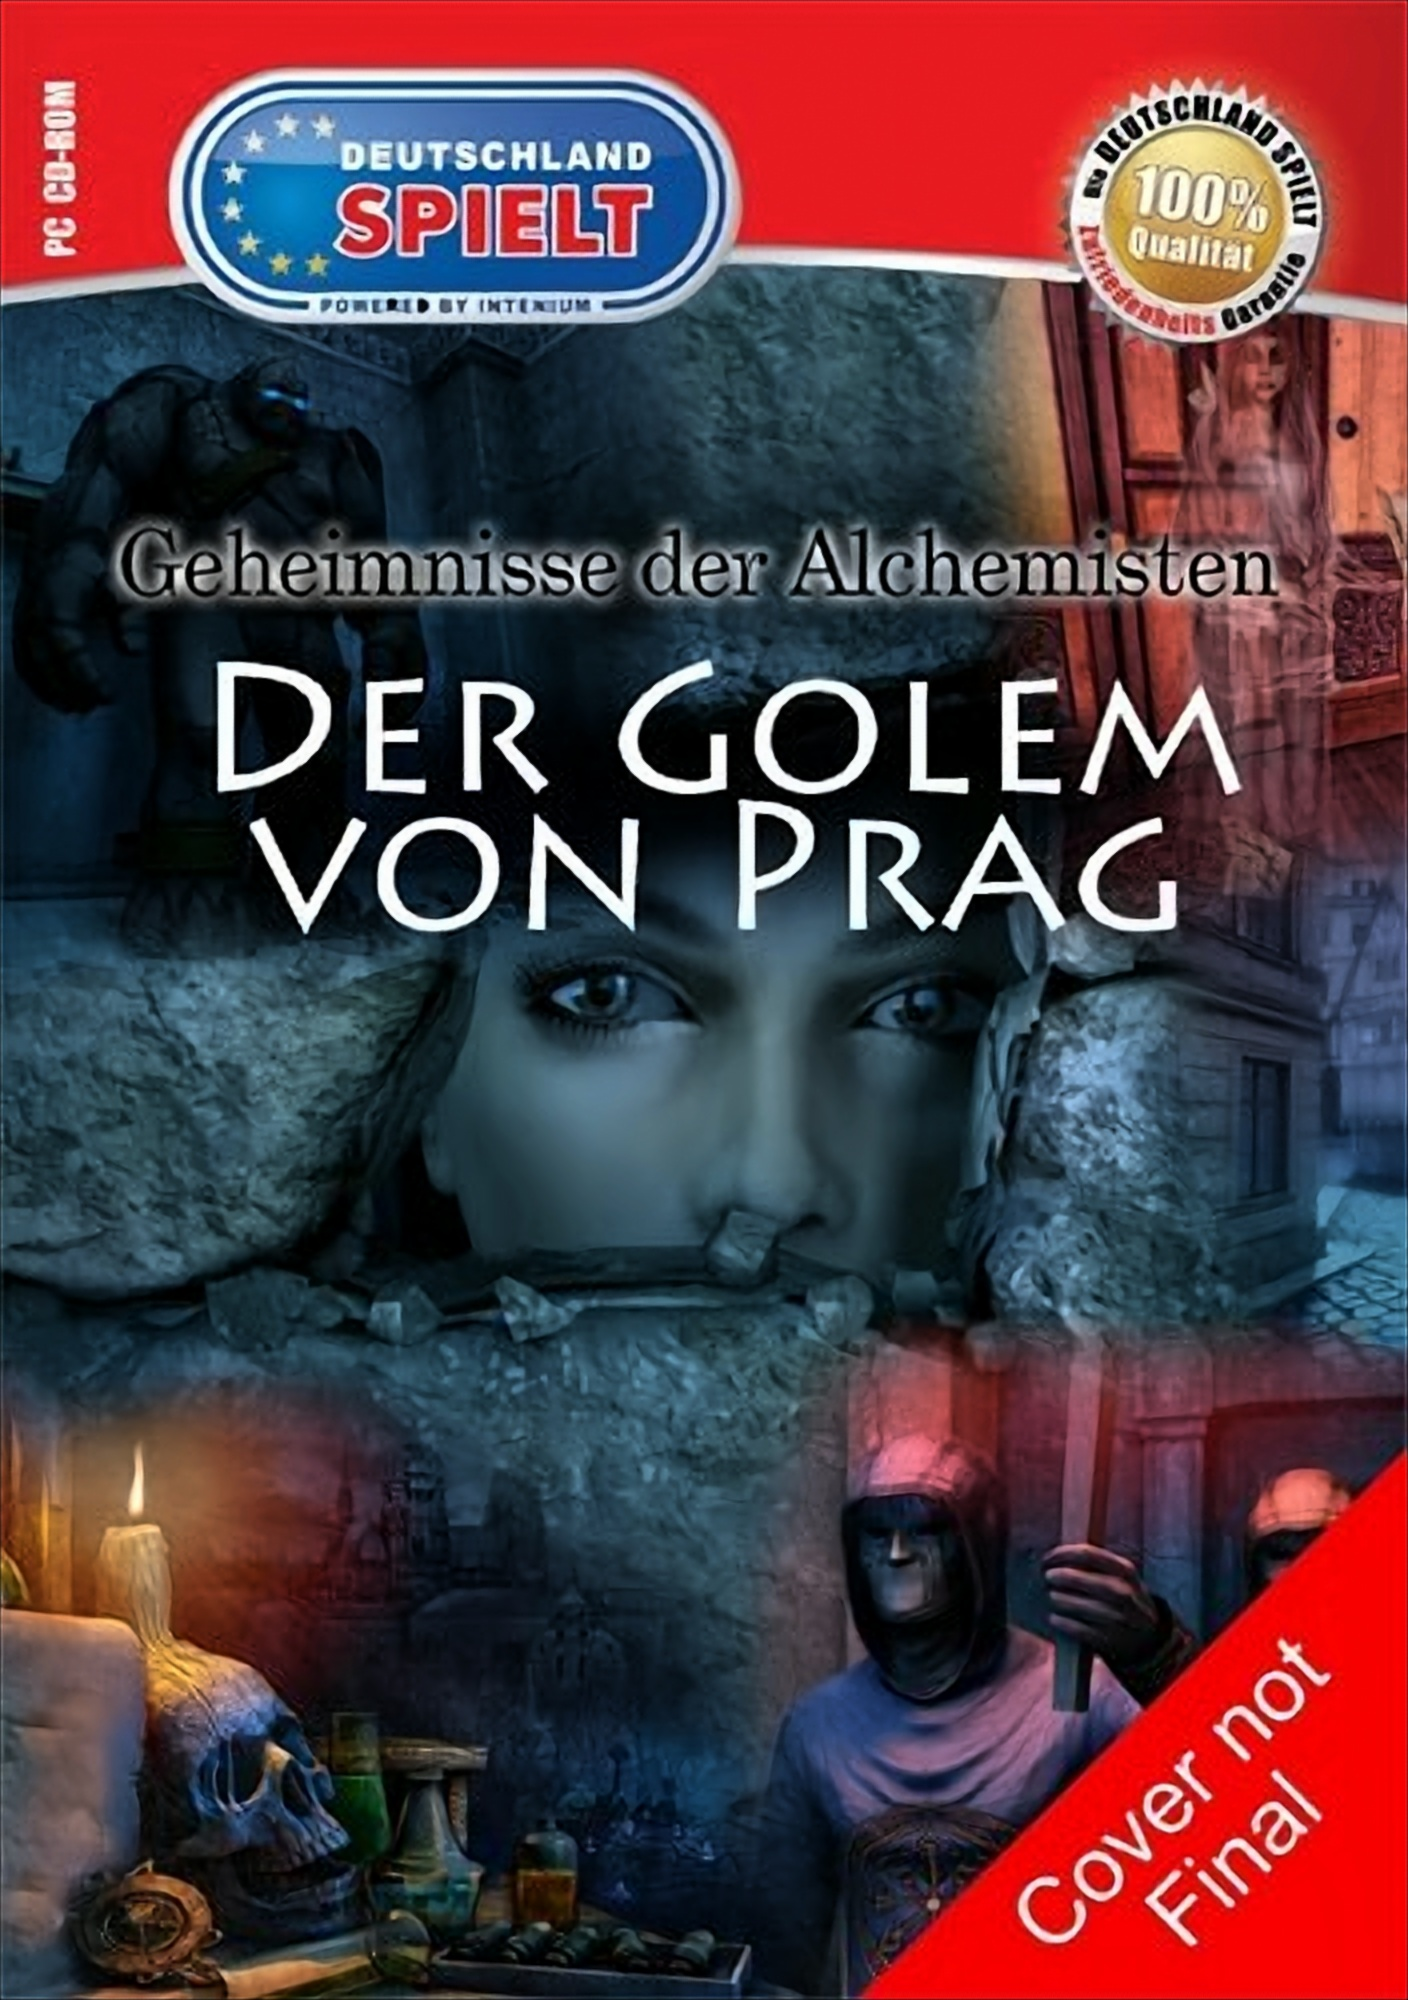 Golem der Der Alchemisten: [PC] Geheimnisse Das - von Prag